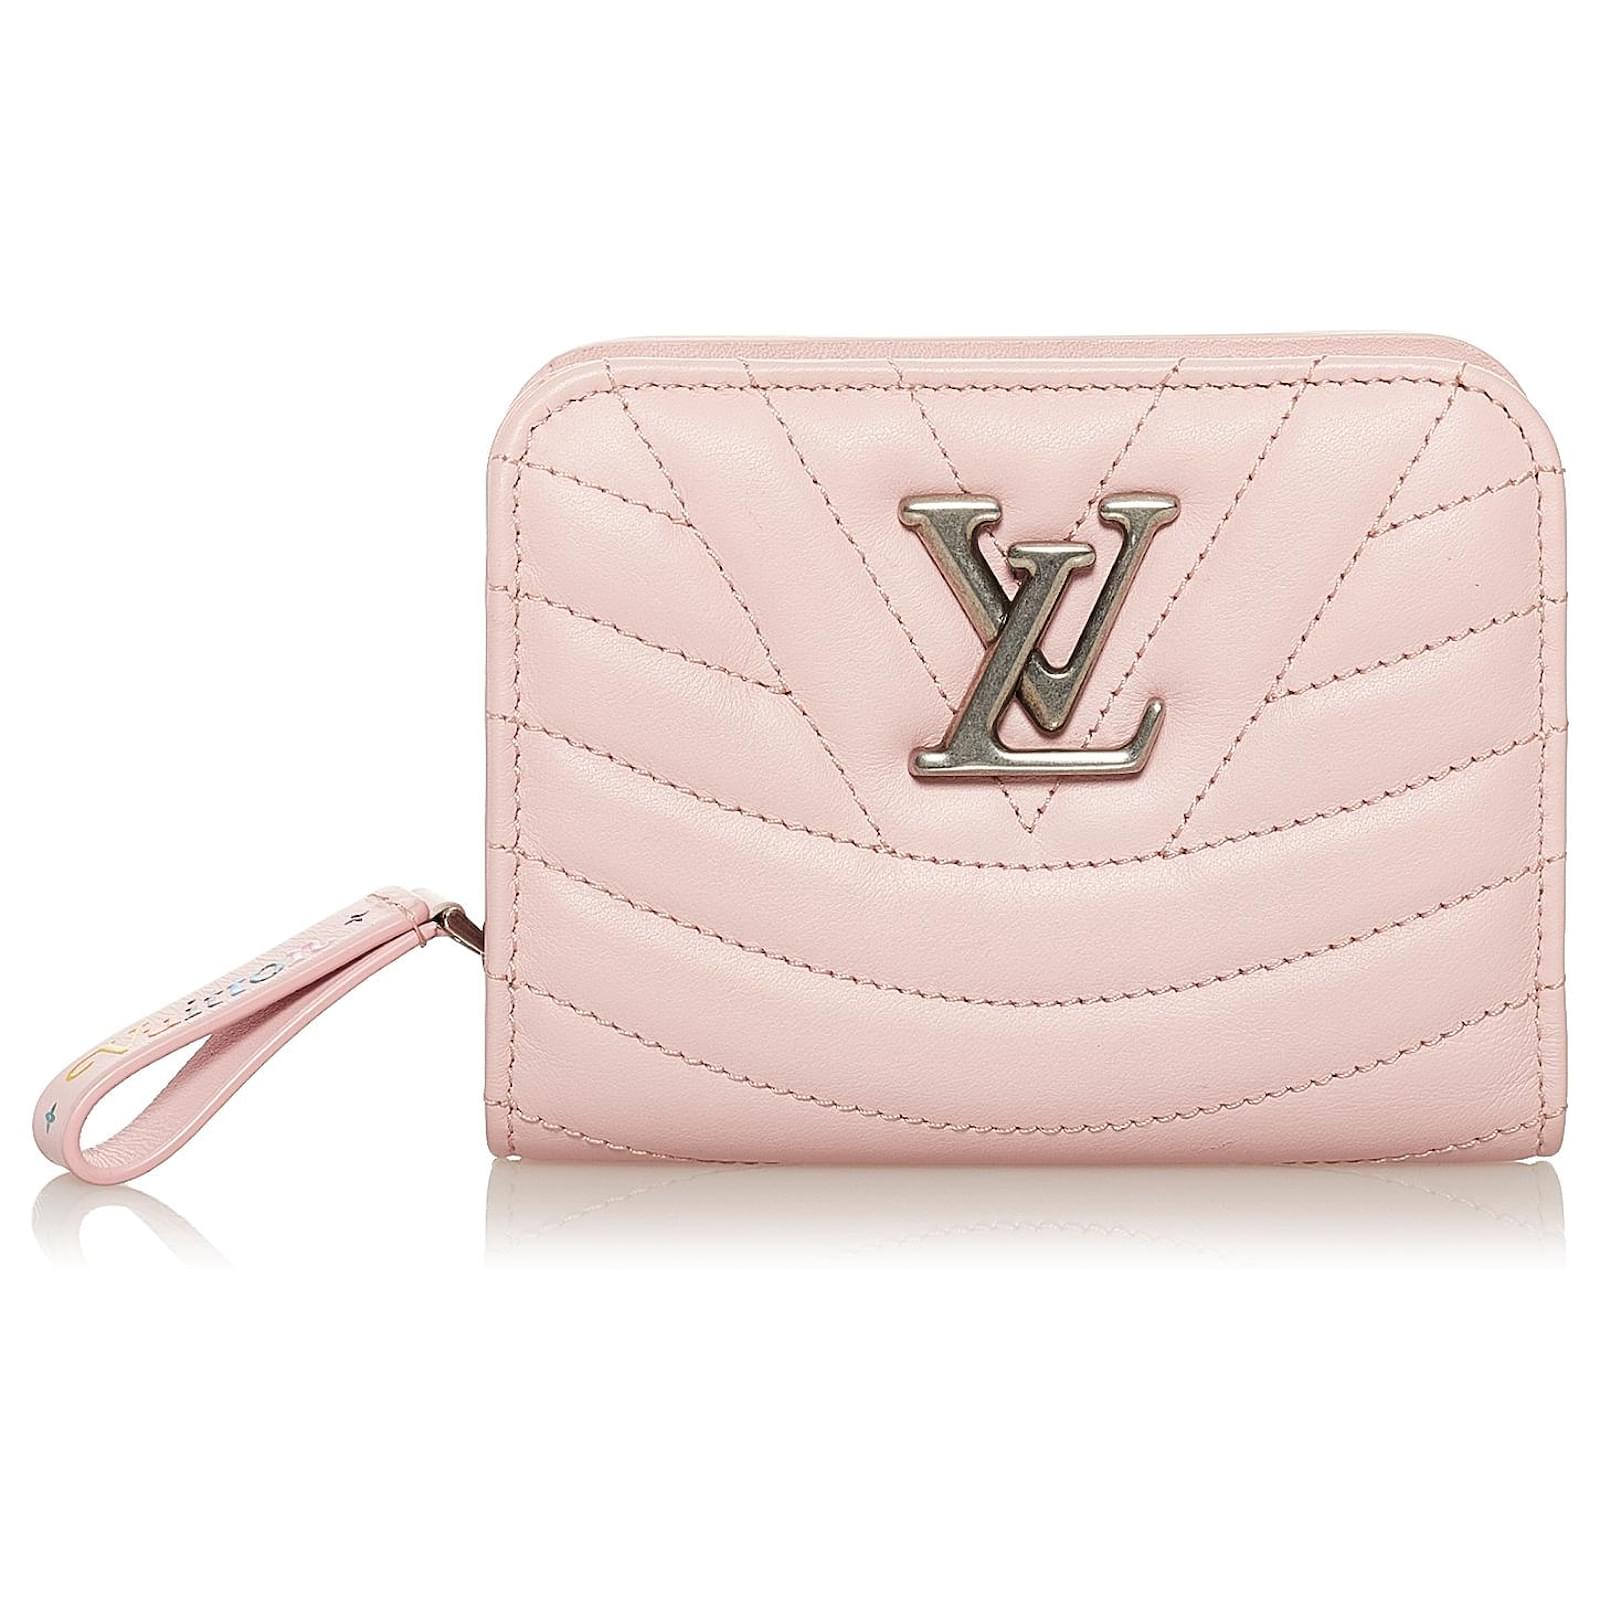 LV Wallet - Pink Interior